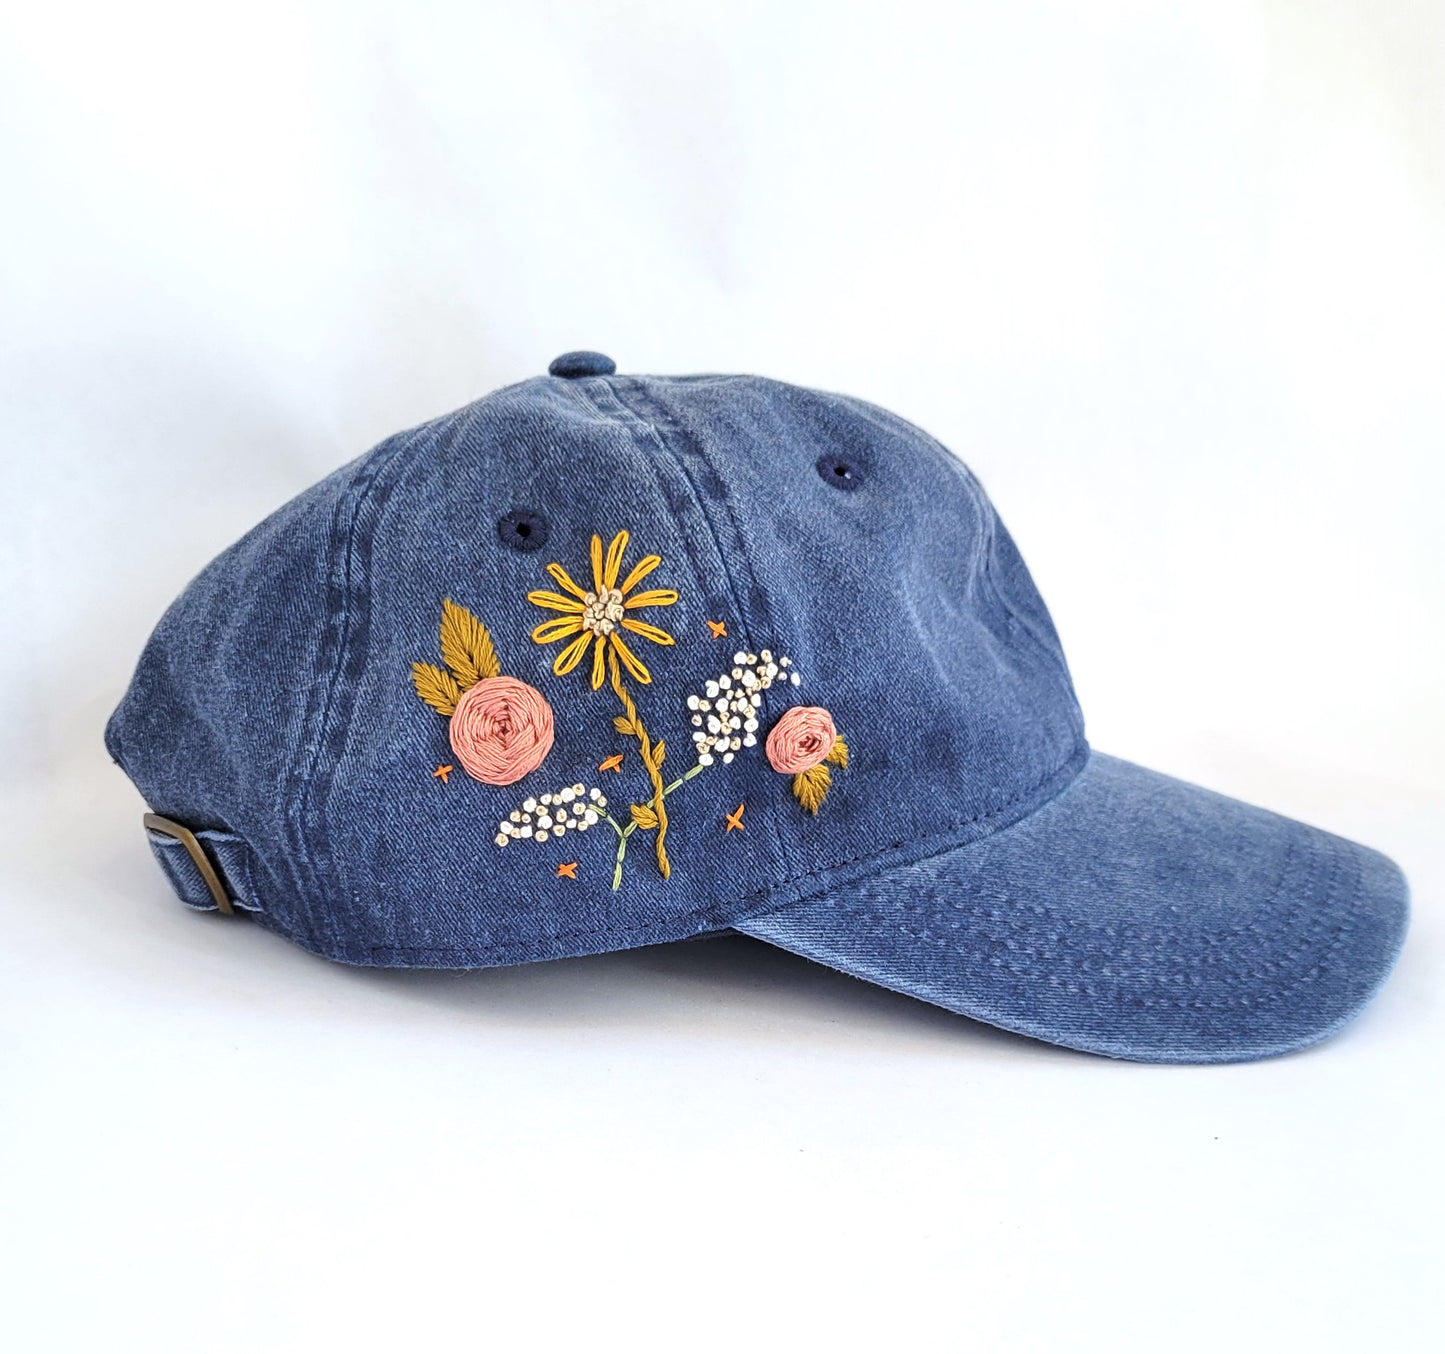 Embroidered Baseball Hat - Vintage Wash Blue Denim